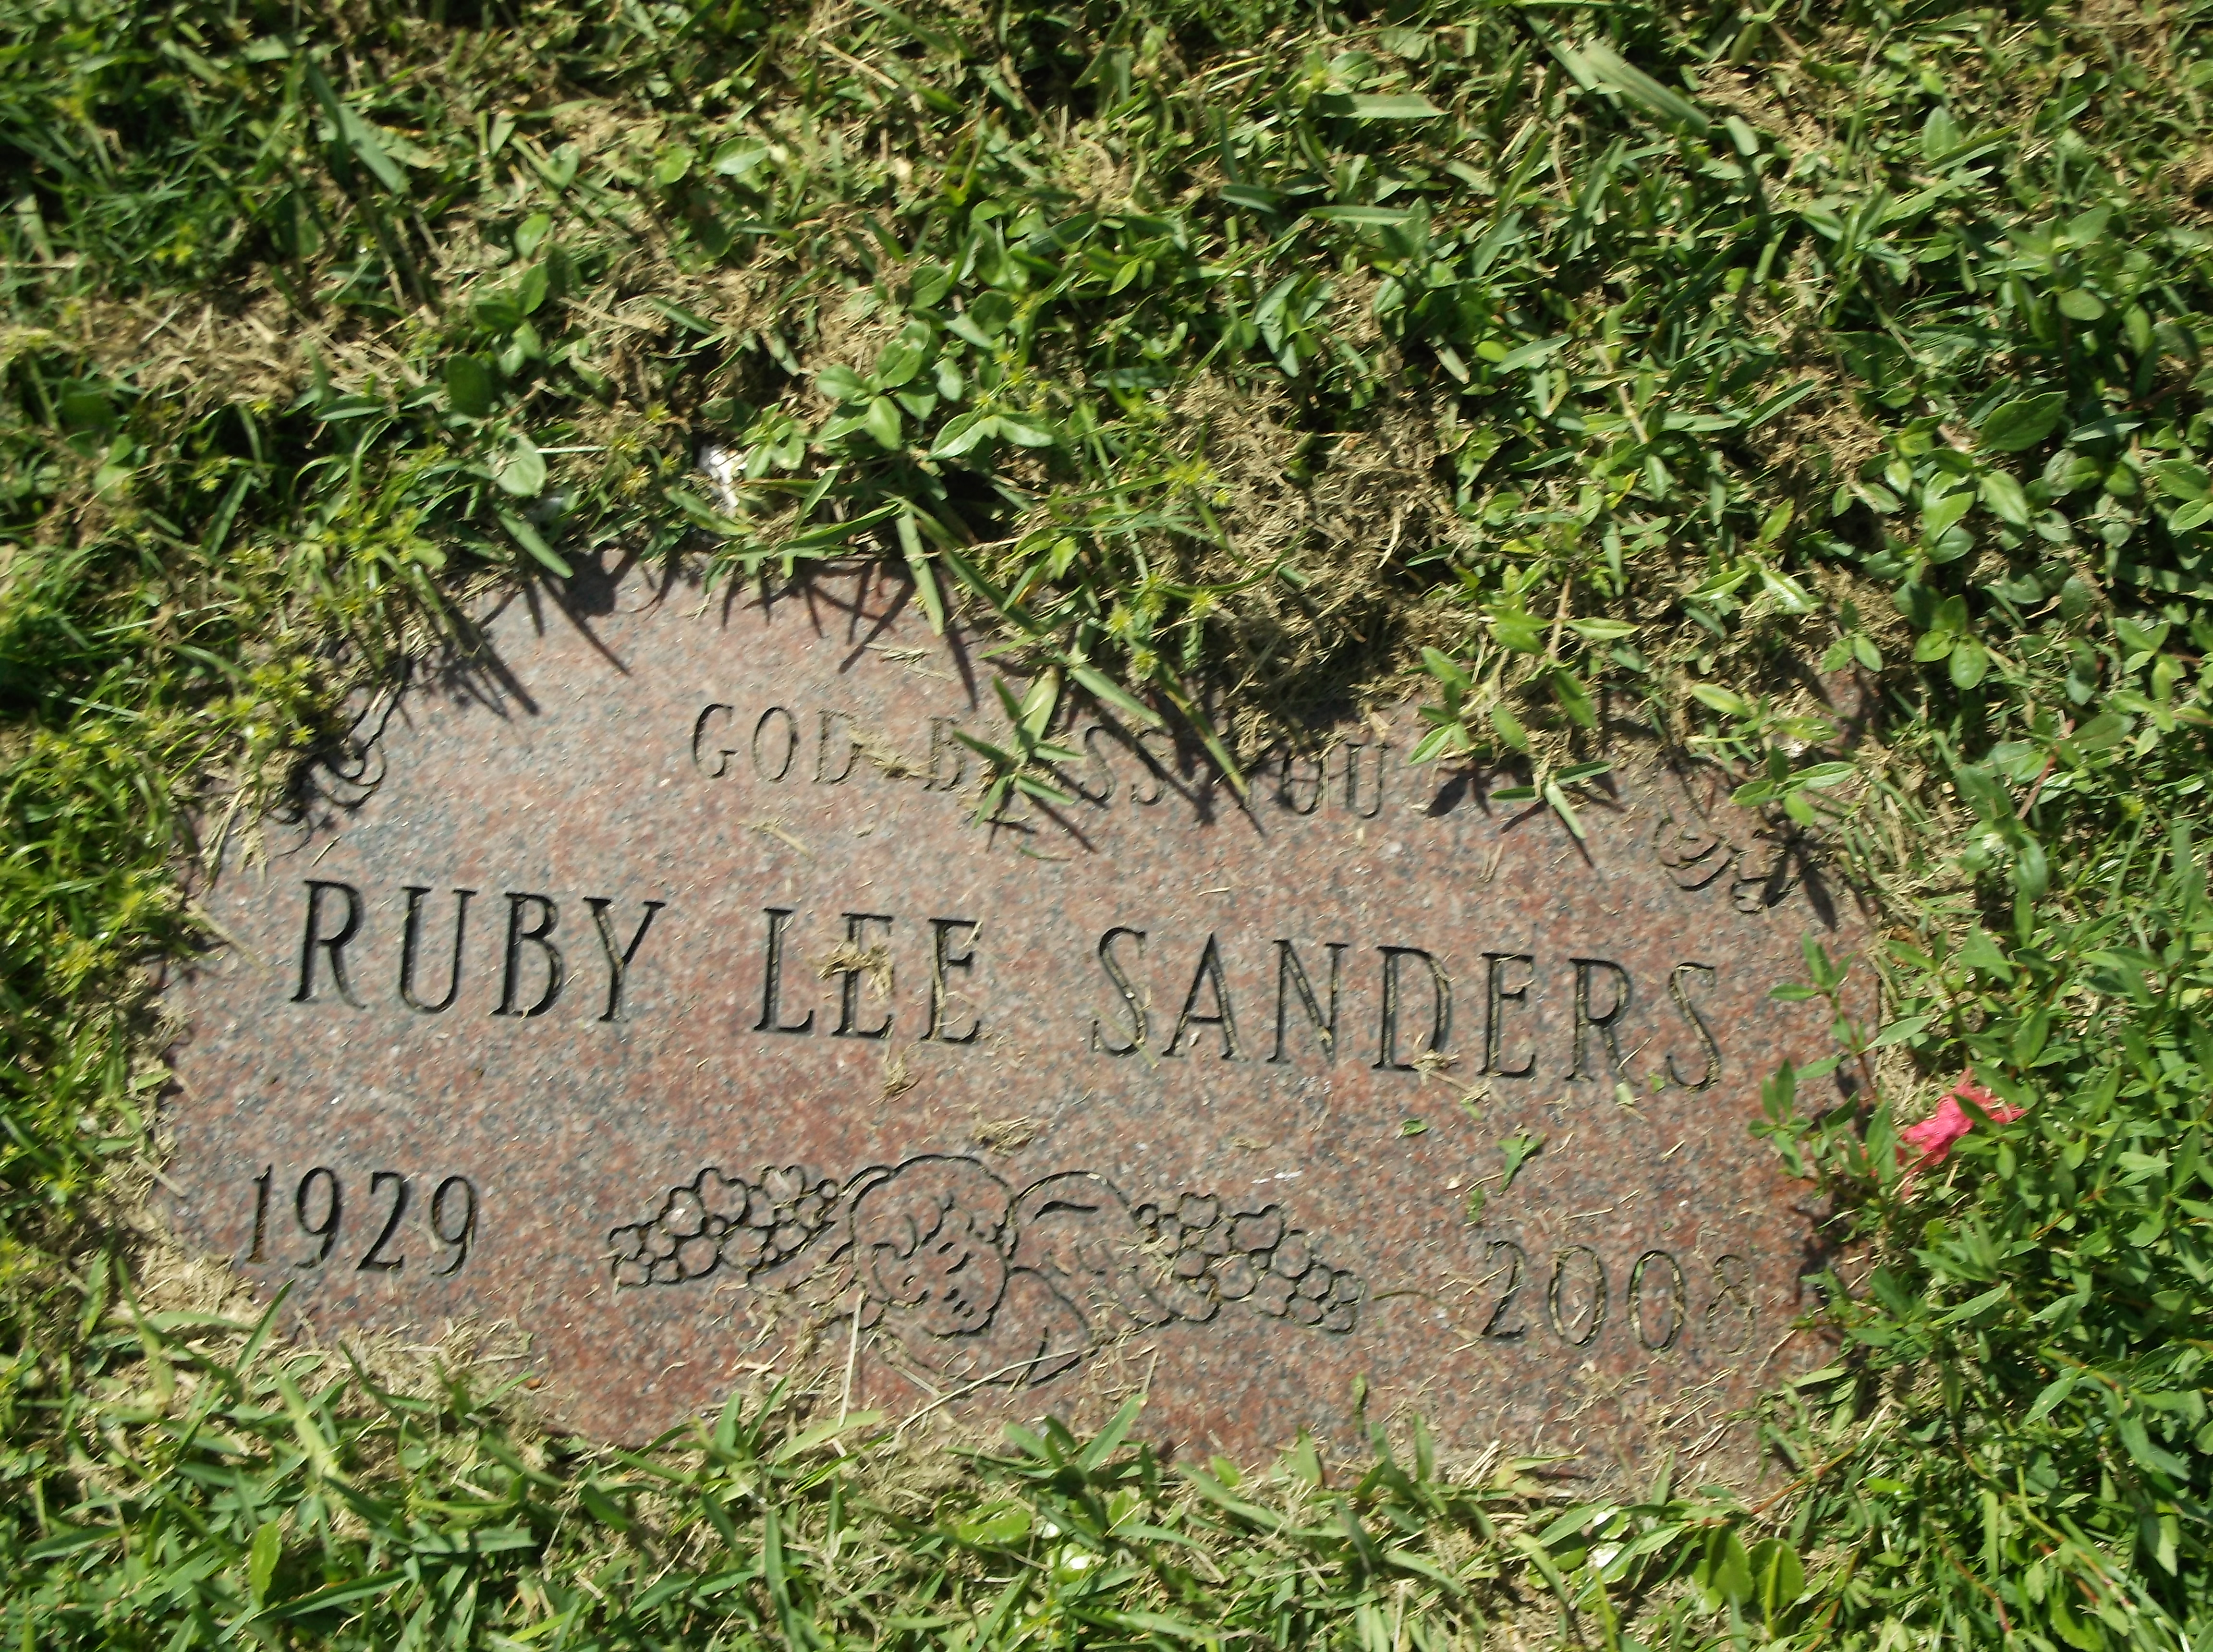 Ruby Lee Sanders